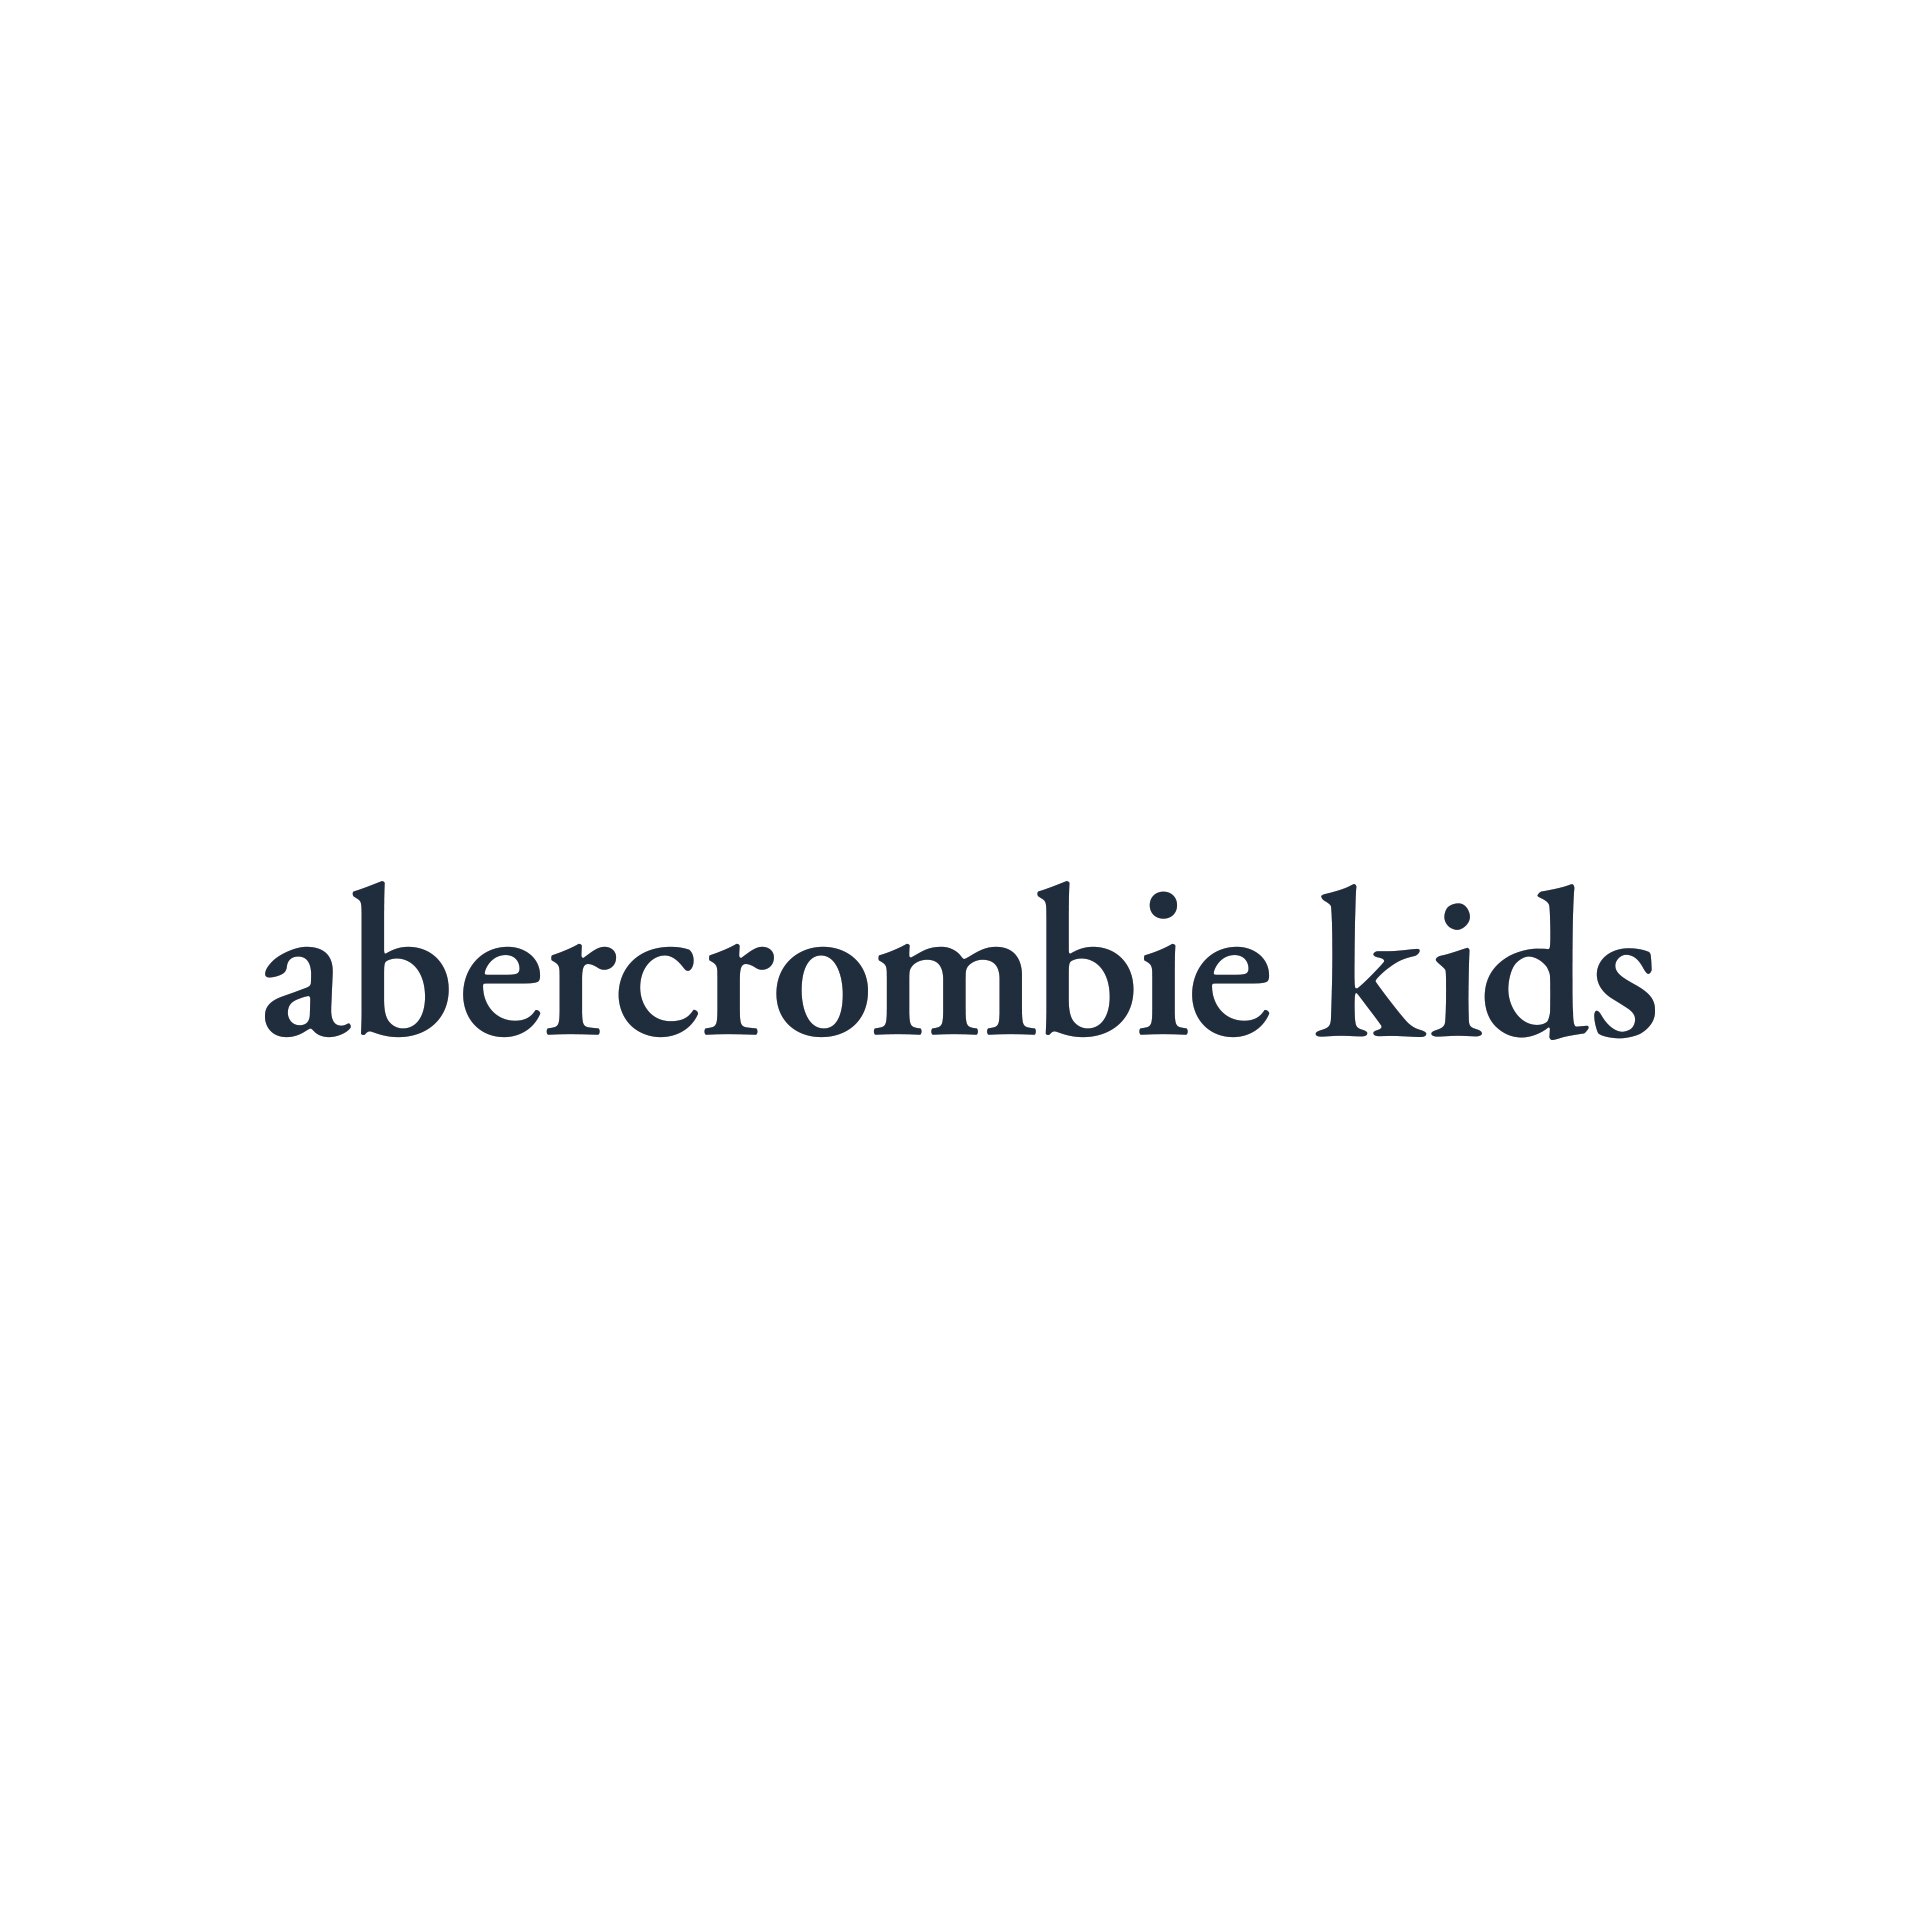 abercrombie kids woodfield